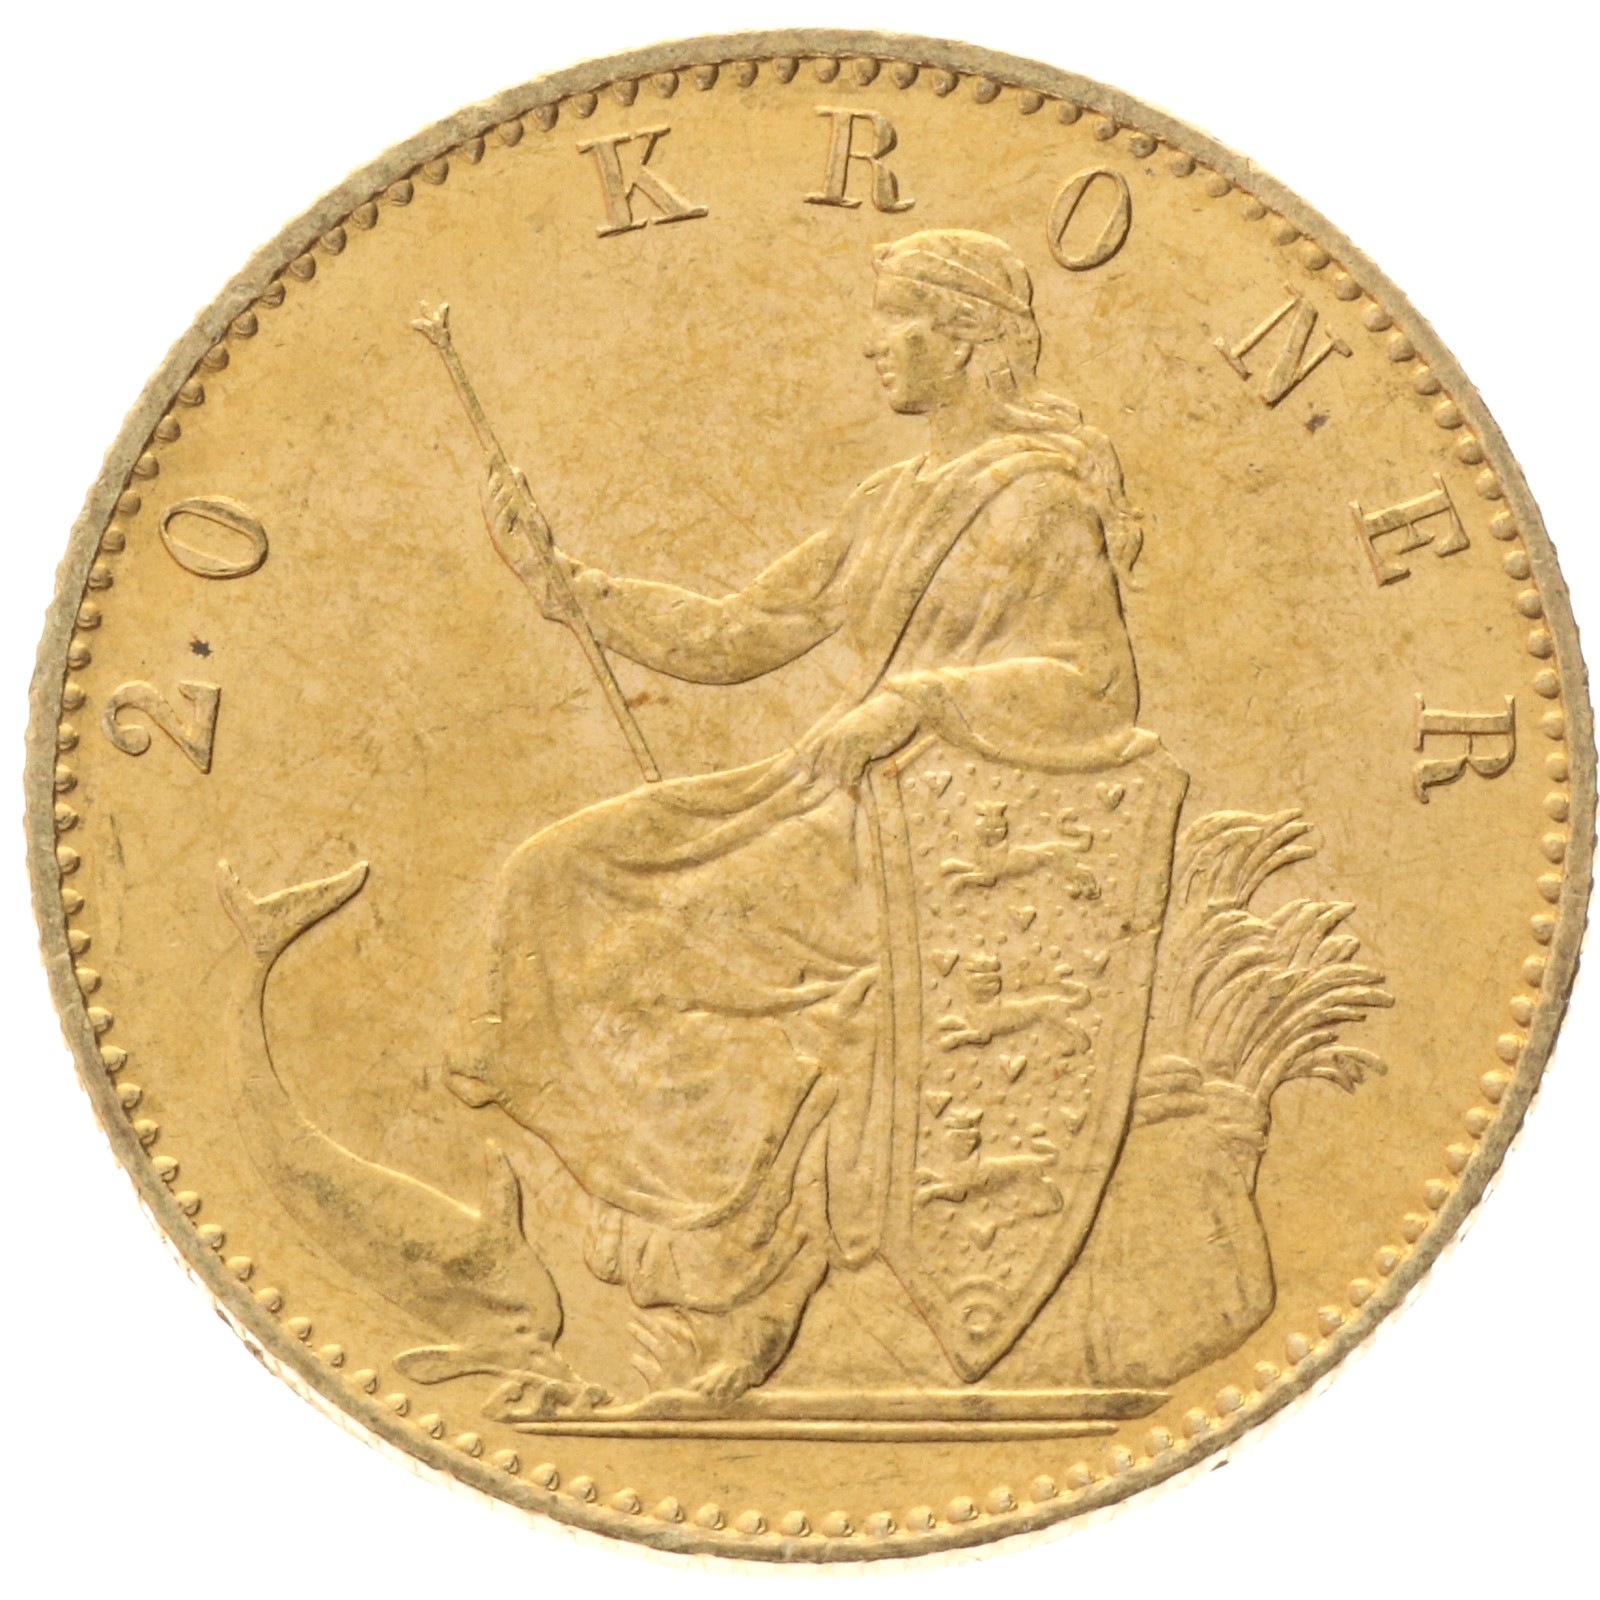 Denmark - 20 kroner - 1900 - Christian IX 